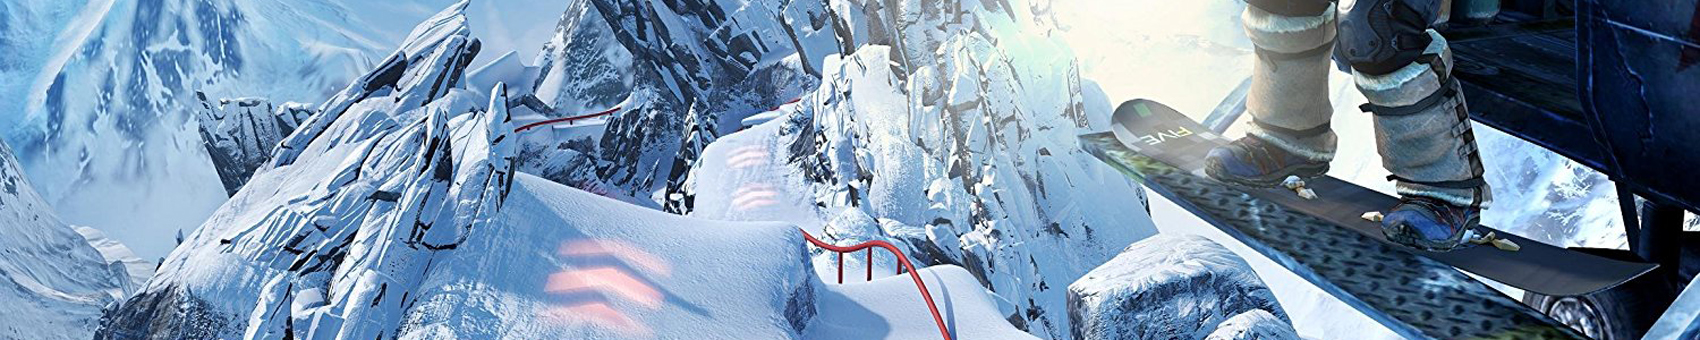 snowboard-banner-02